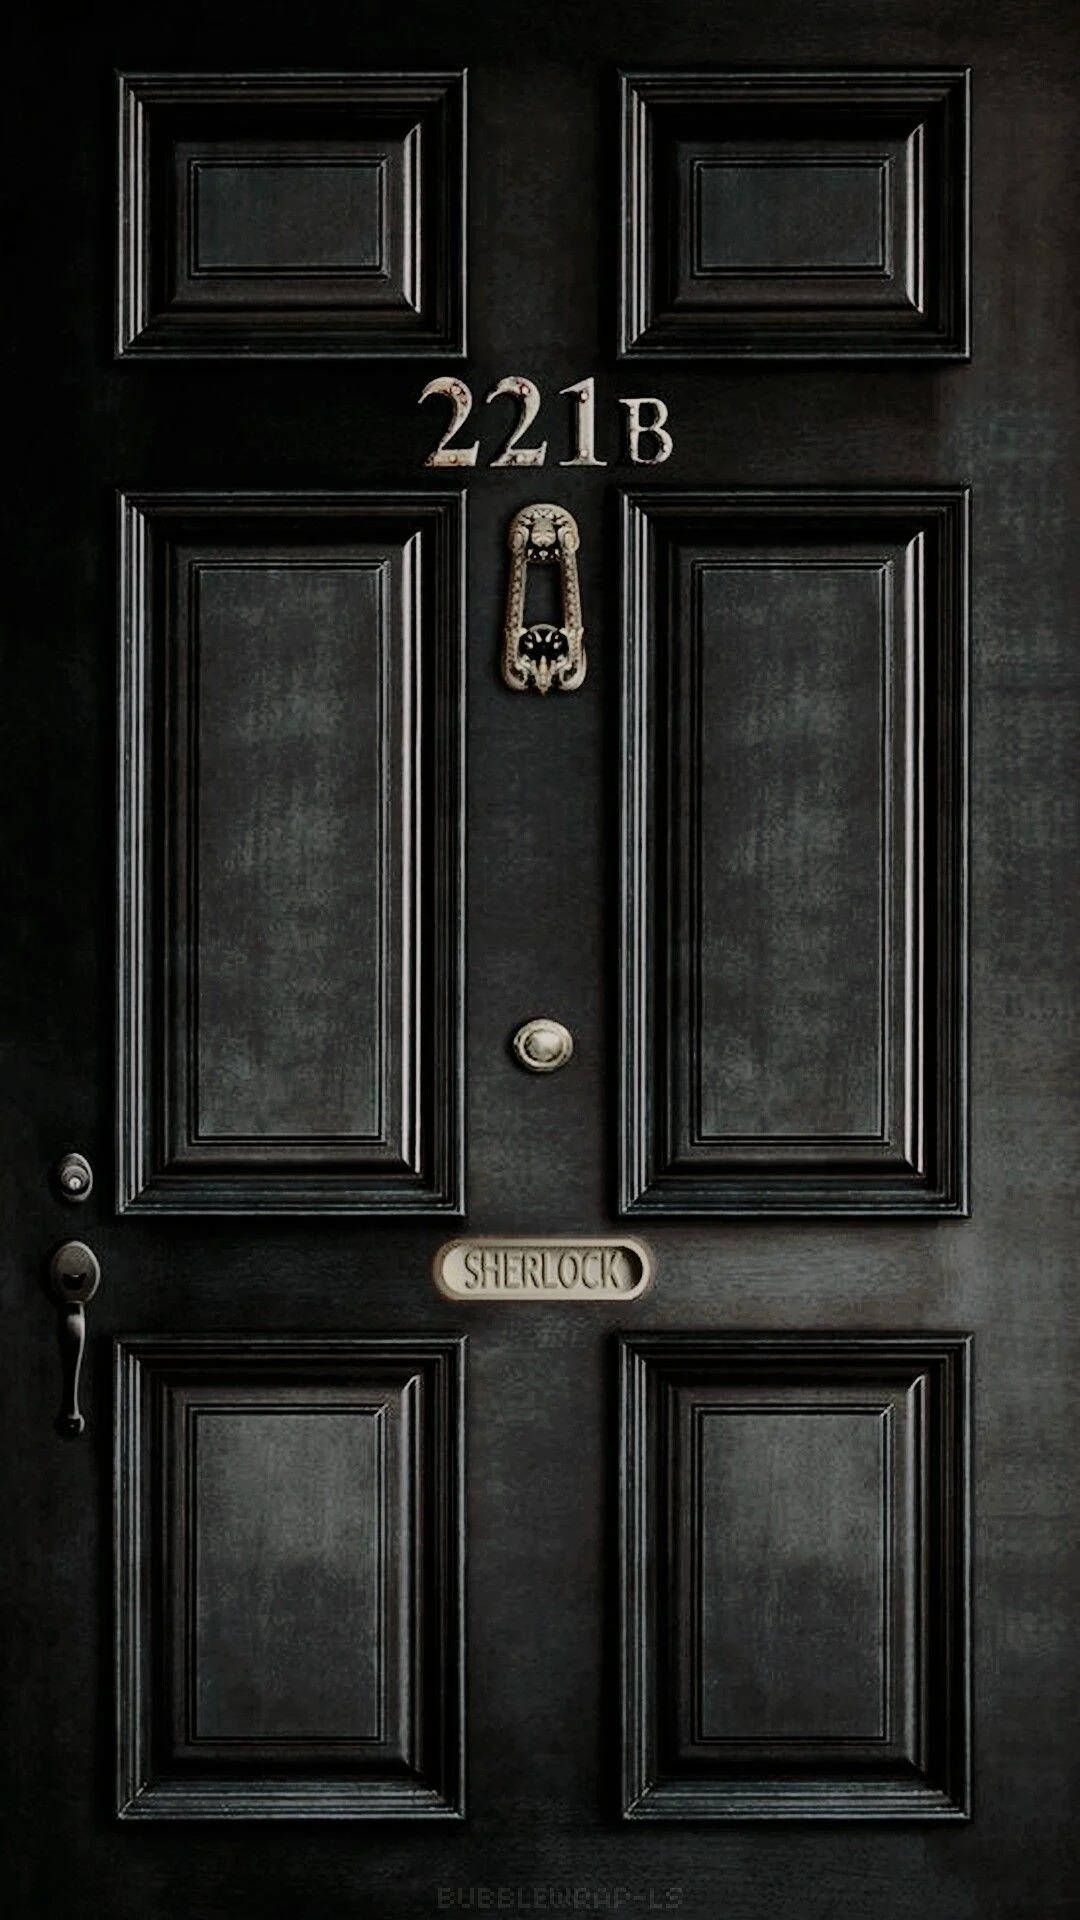 8k Iphone 221b Baker Street Sherlock Holmes Picture